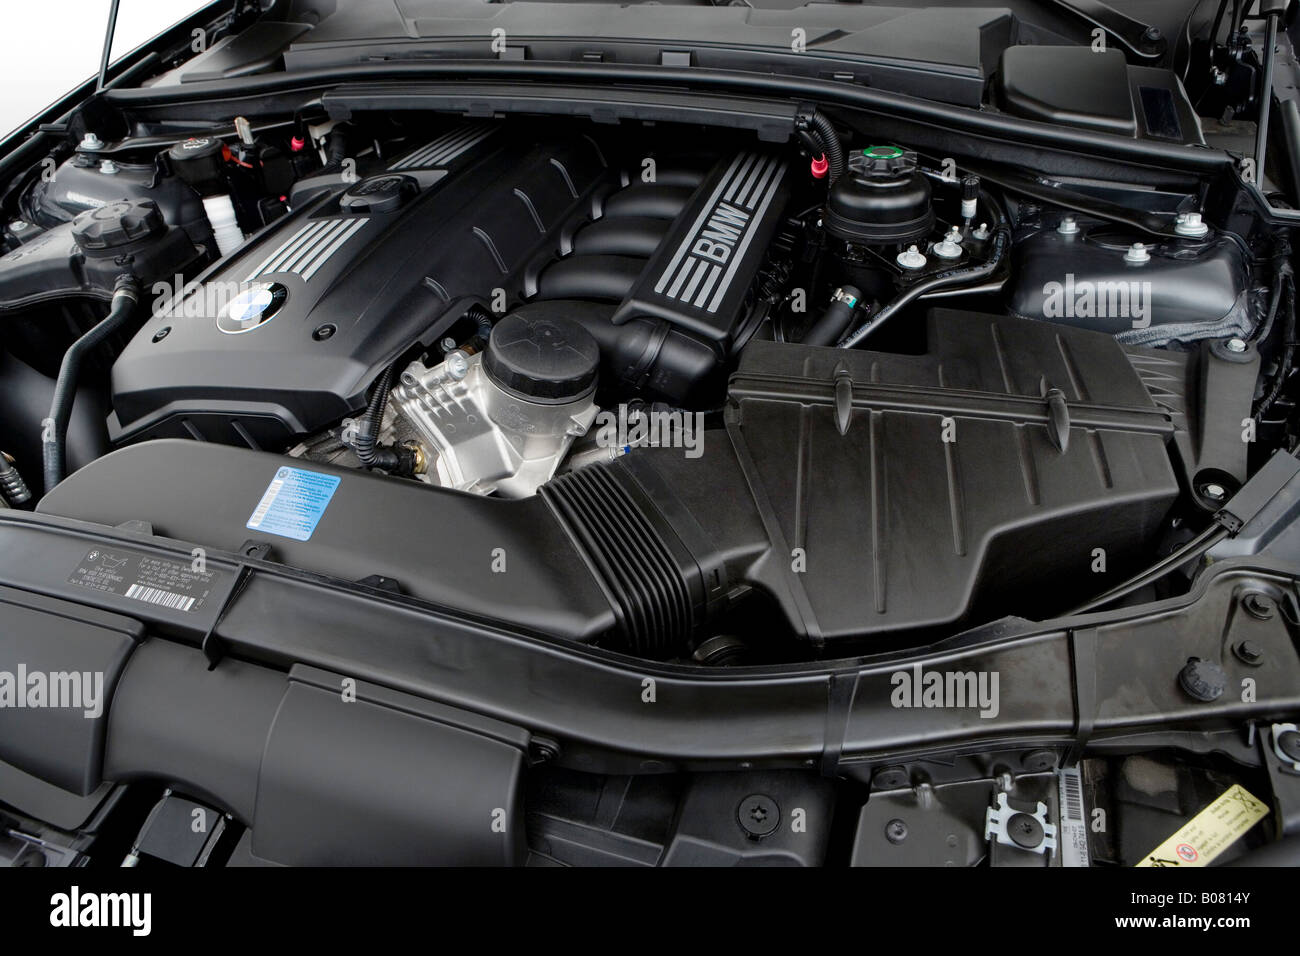 2008 BMW 3-series 328i in Gray - Engine Stock Photo - Alamy